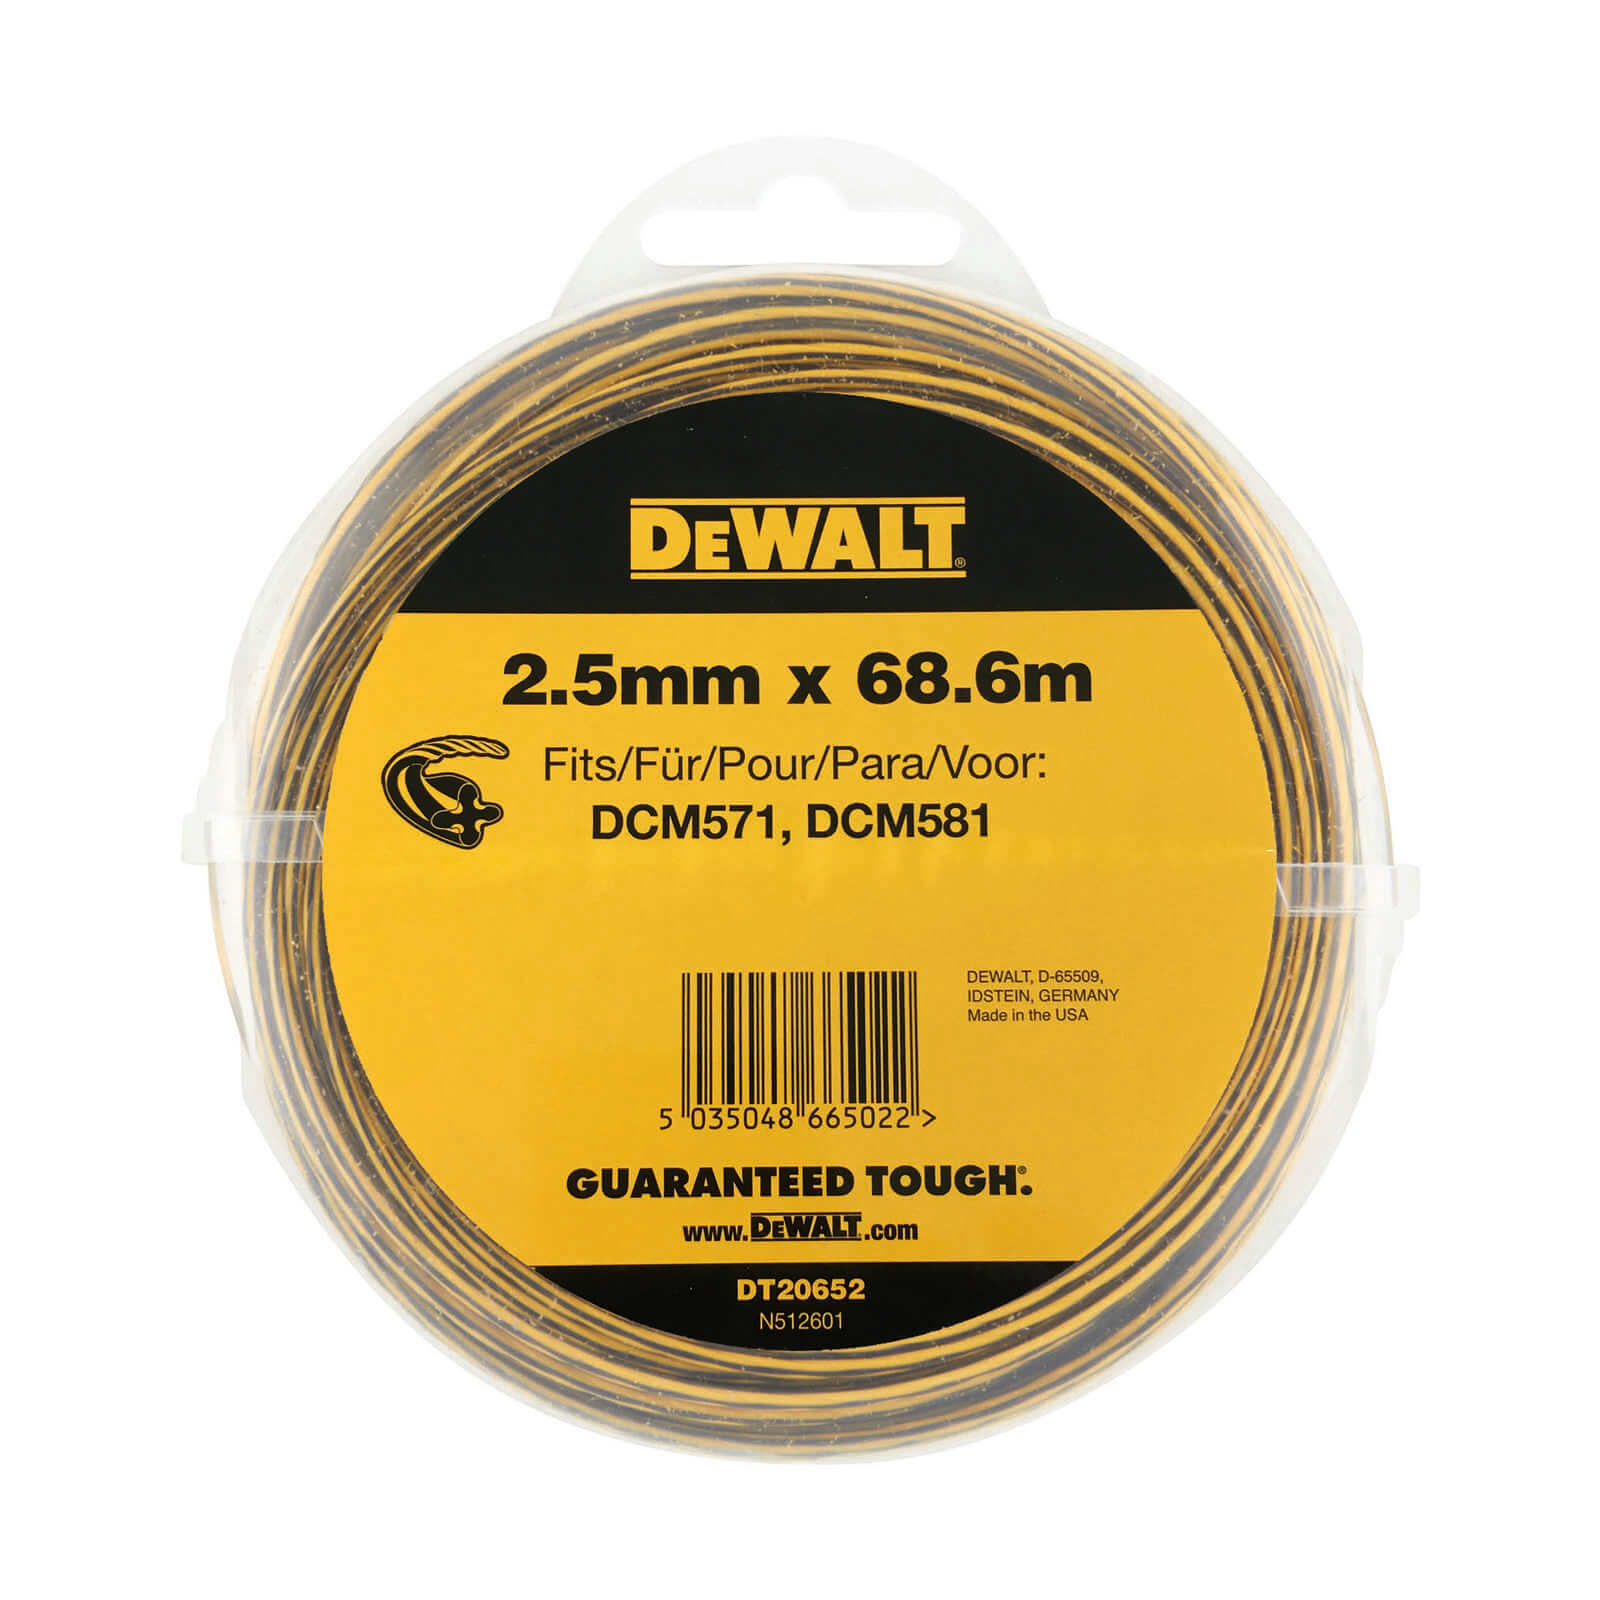 DeWalt 2.5mm X 68.6m Round Nylon Trimmer Line